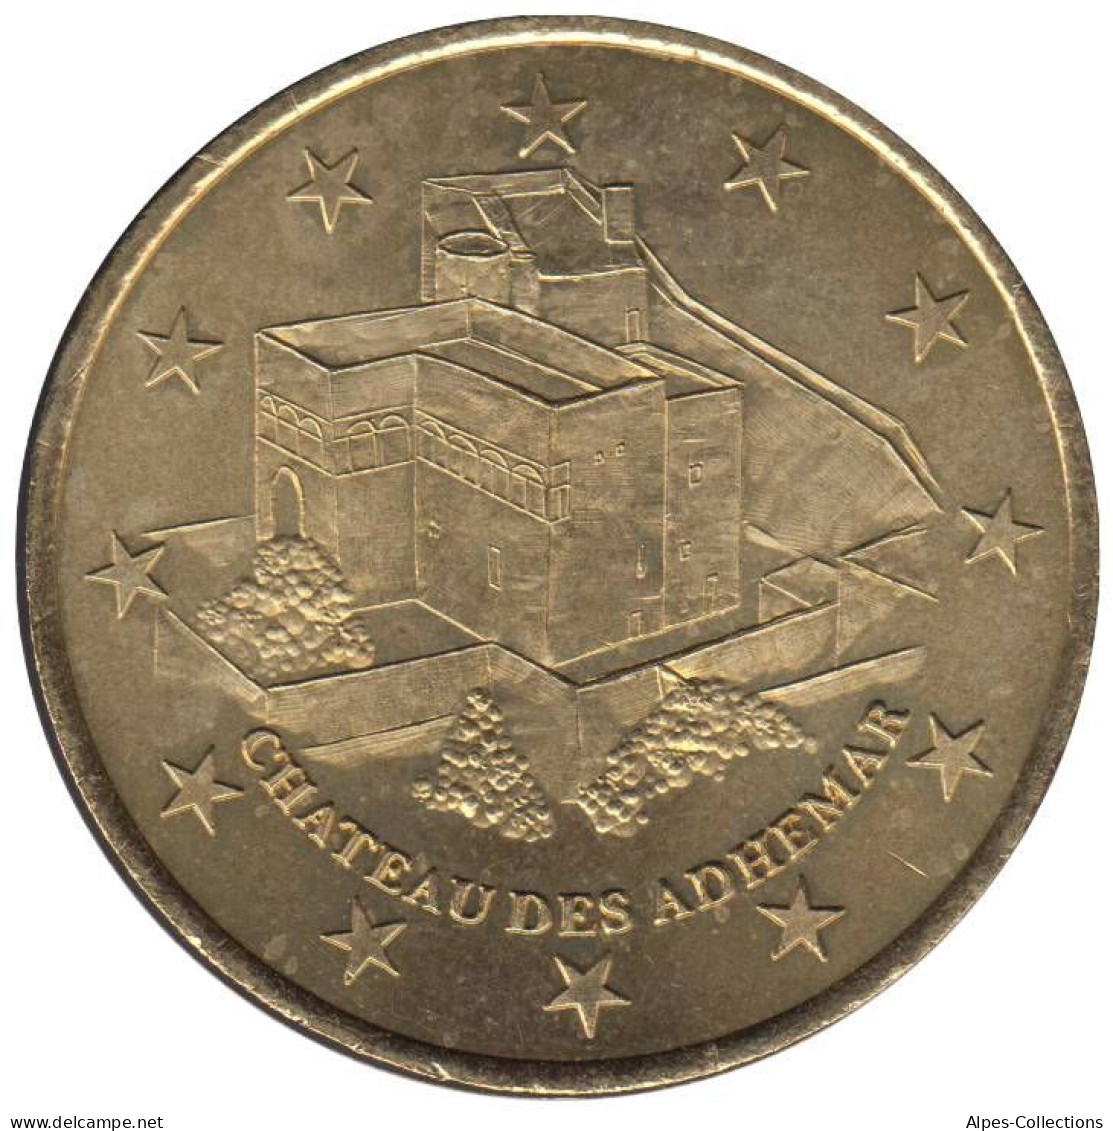 MONTELIMAR - EU0010.1 - 1 EURO DES VILLES - Réf: T329 - 1997 - Euros Of The Cities